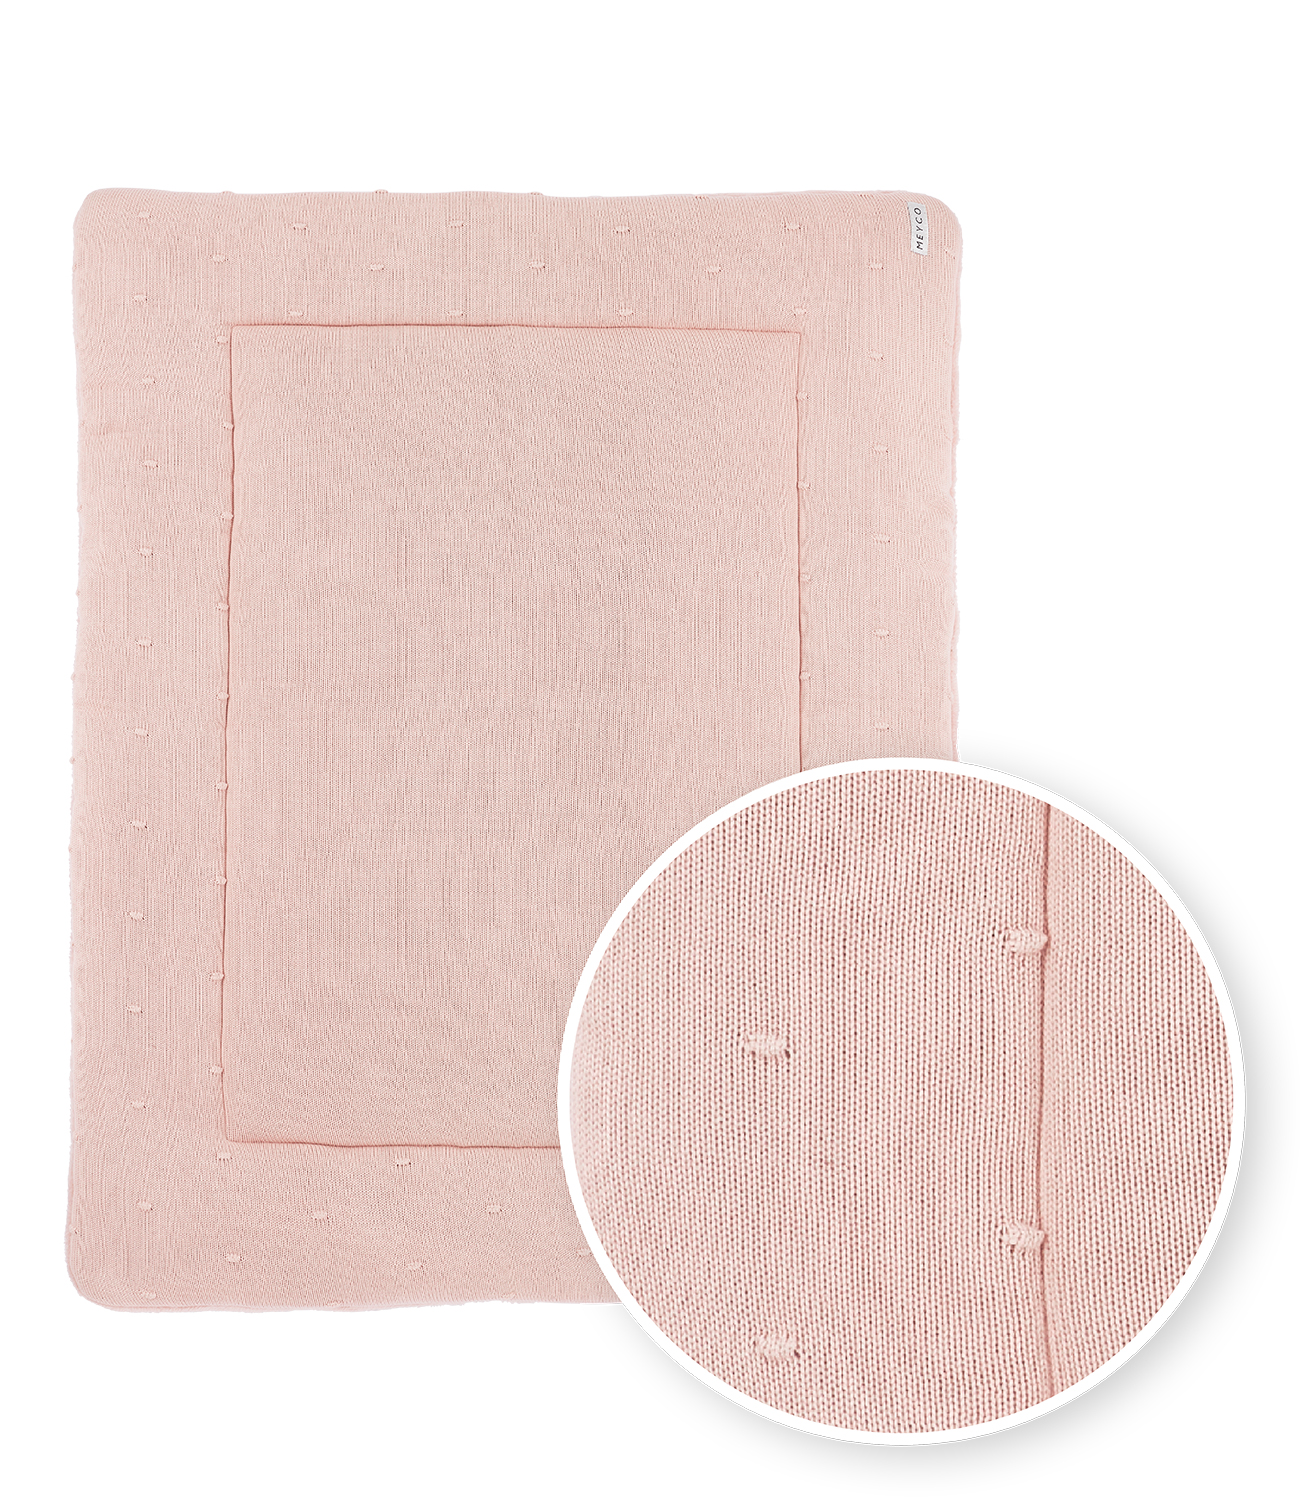 Playpen mattress Mini Knots teddy - soft pink - 77x97cm